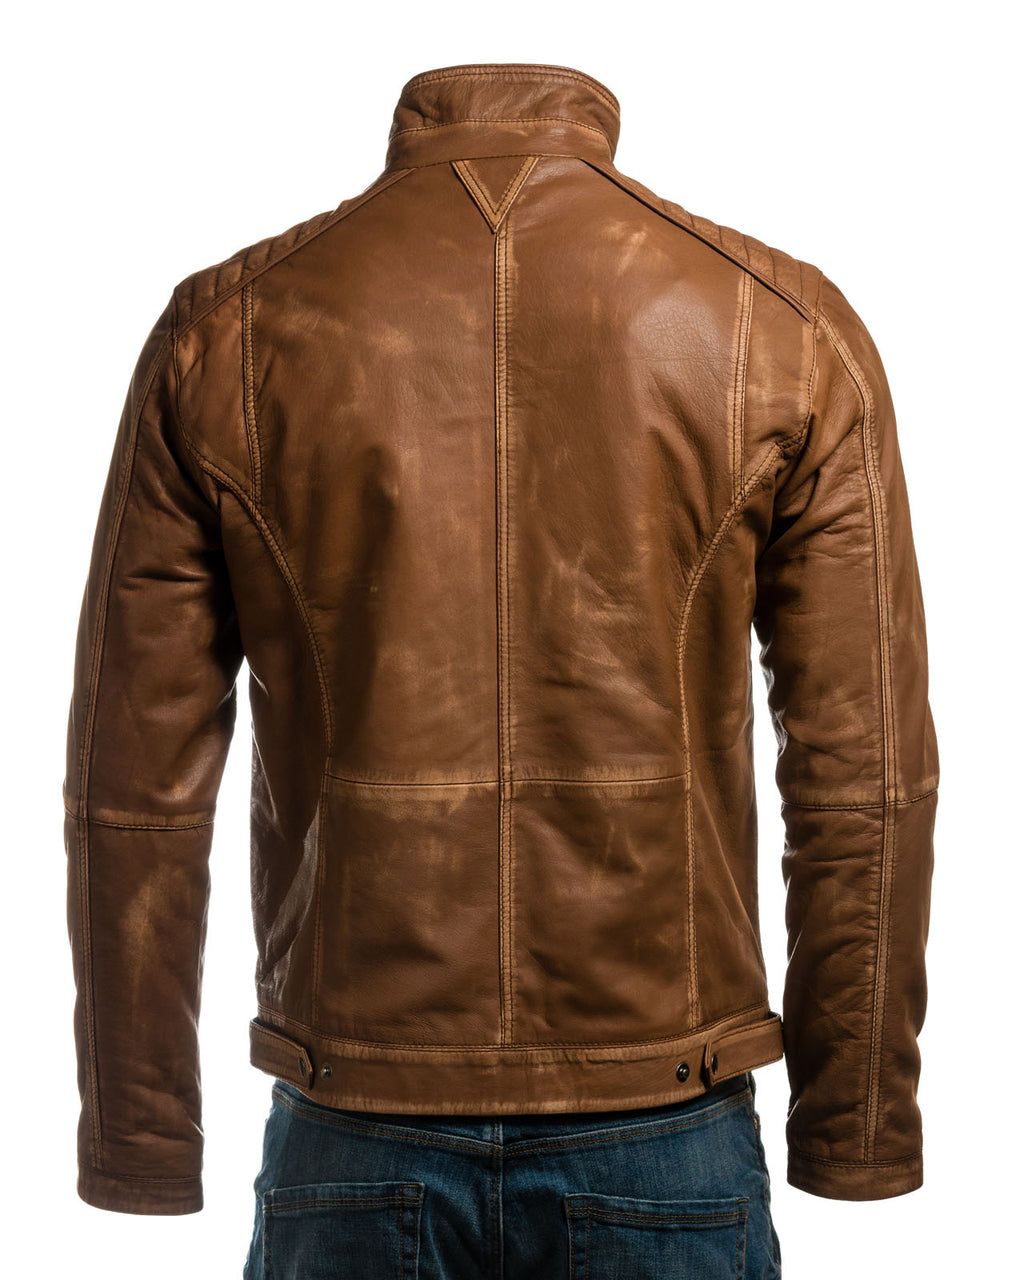 Men's Plus Size Antique Tan Vintage Biker Style Leather Jacket - Dominico